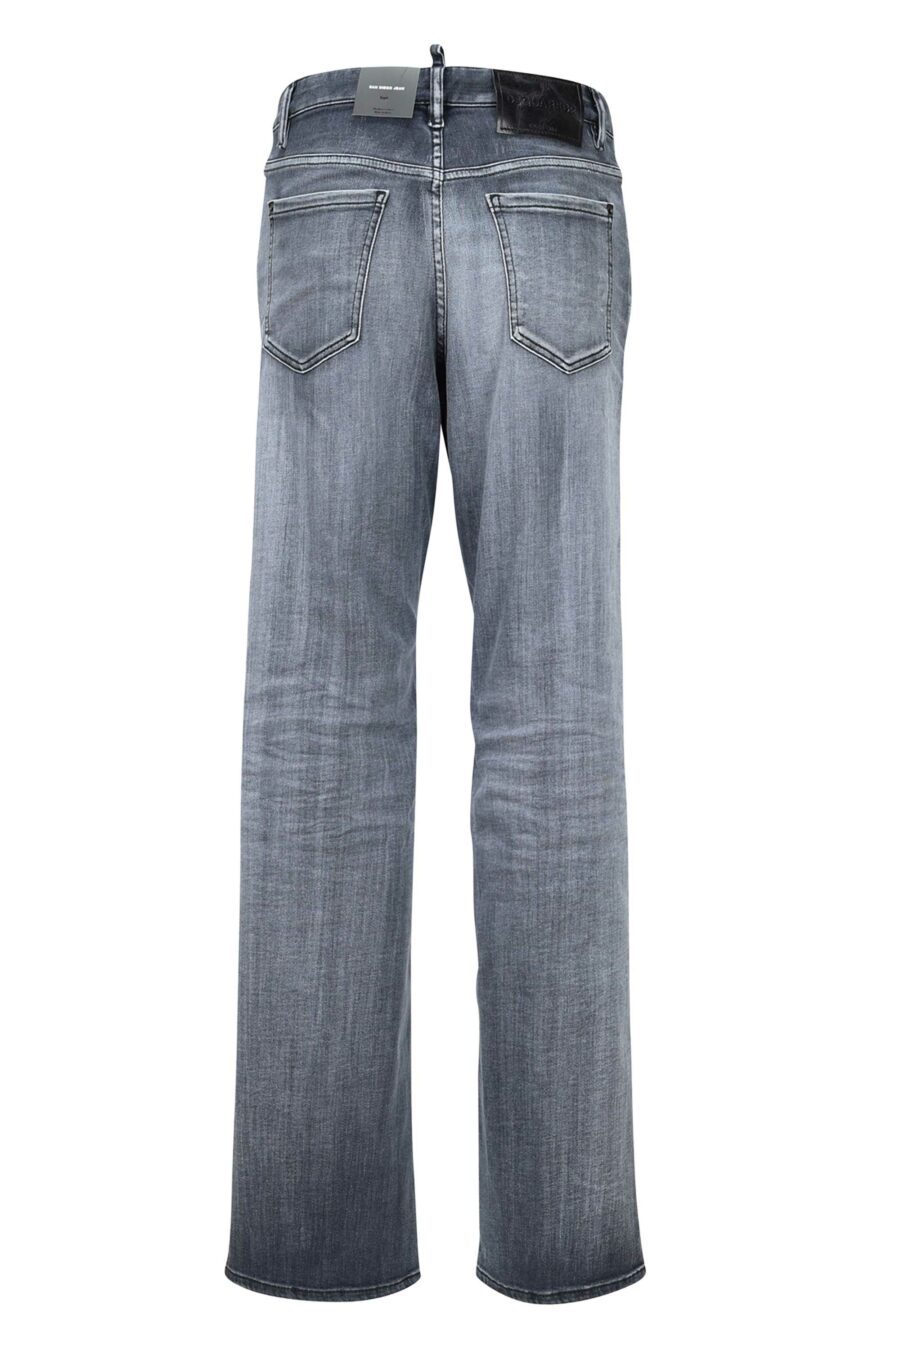 Jeans "San Diego jean" schwarz getragen - 8054148230845 2